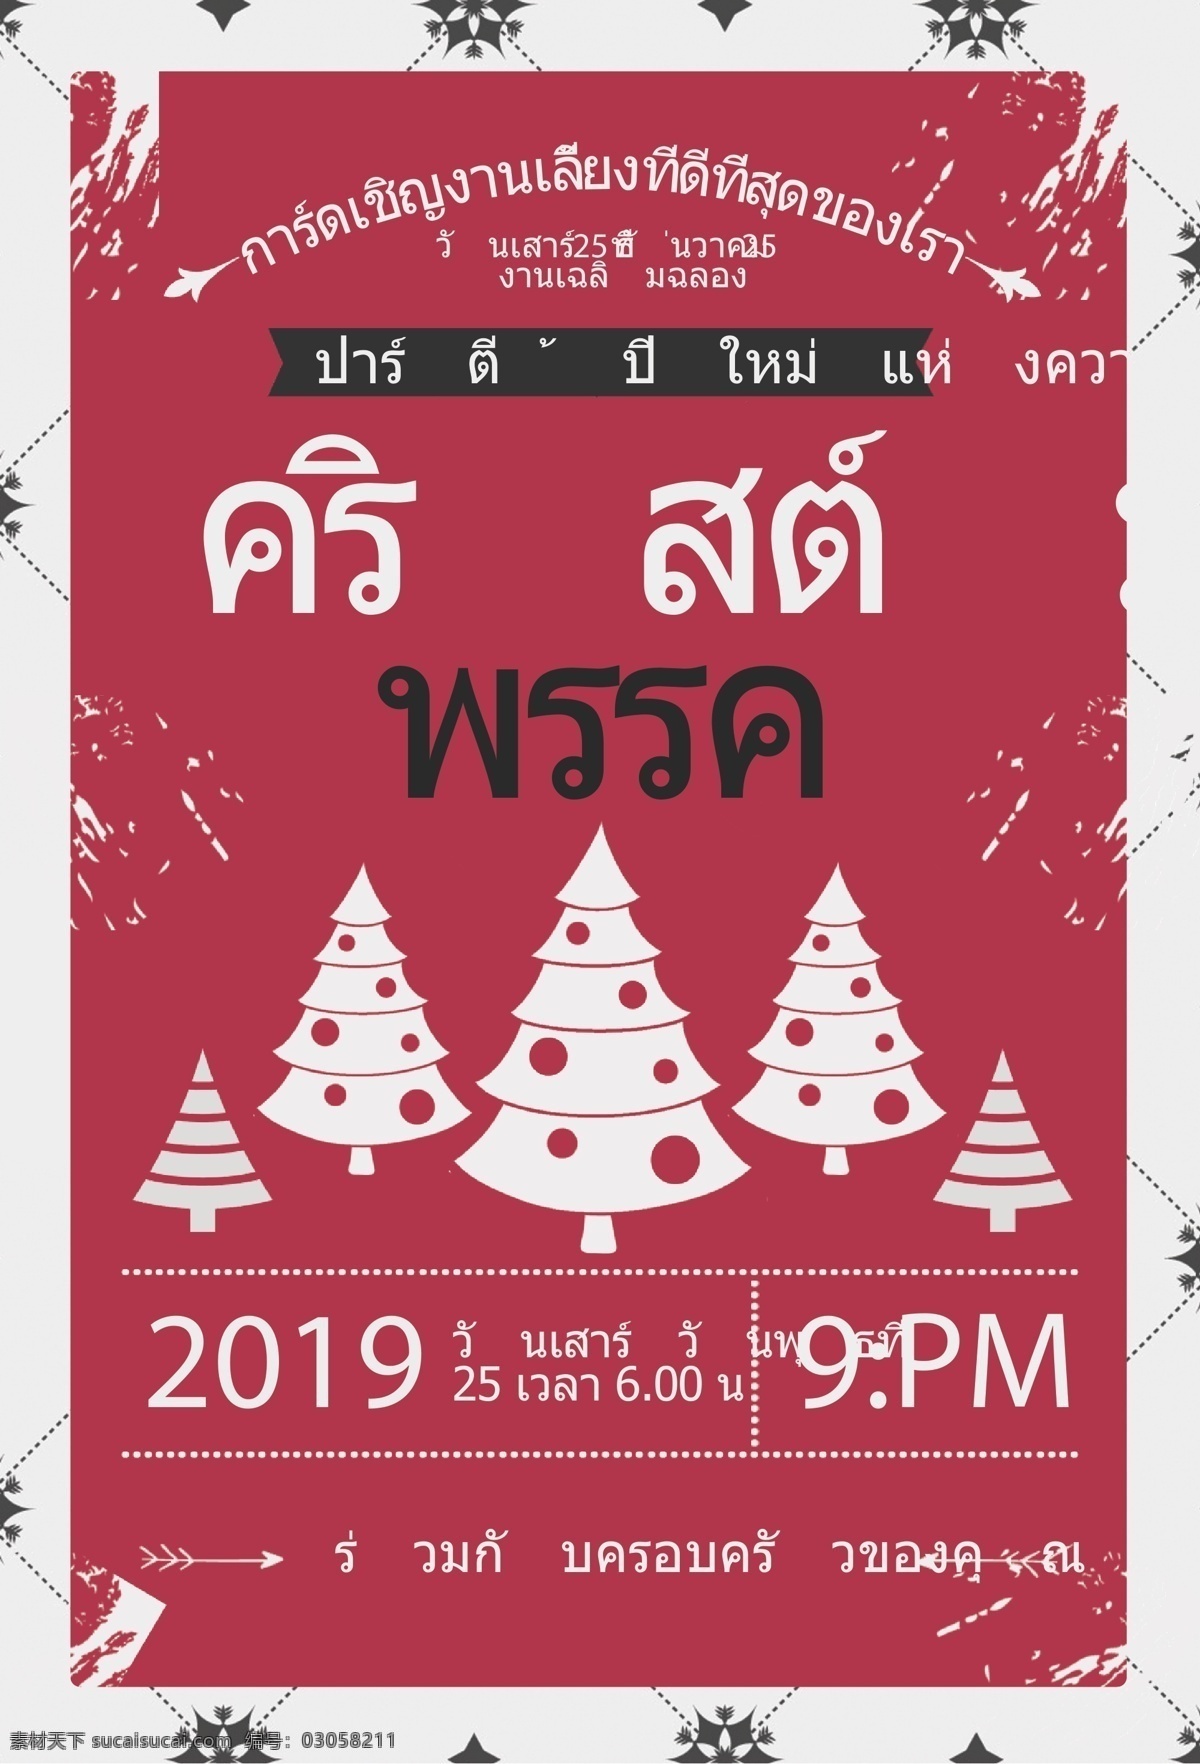 圣诞树在泰国 圣诞树 圣诞节 海报 广告